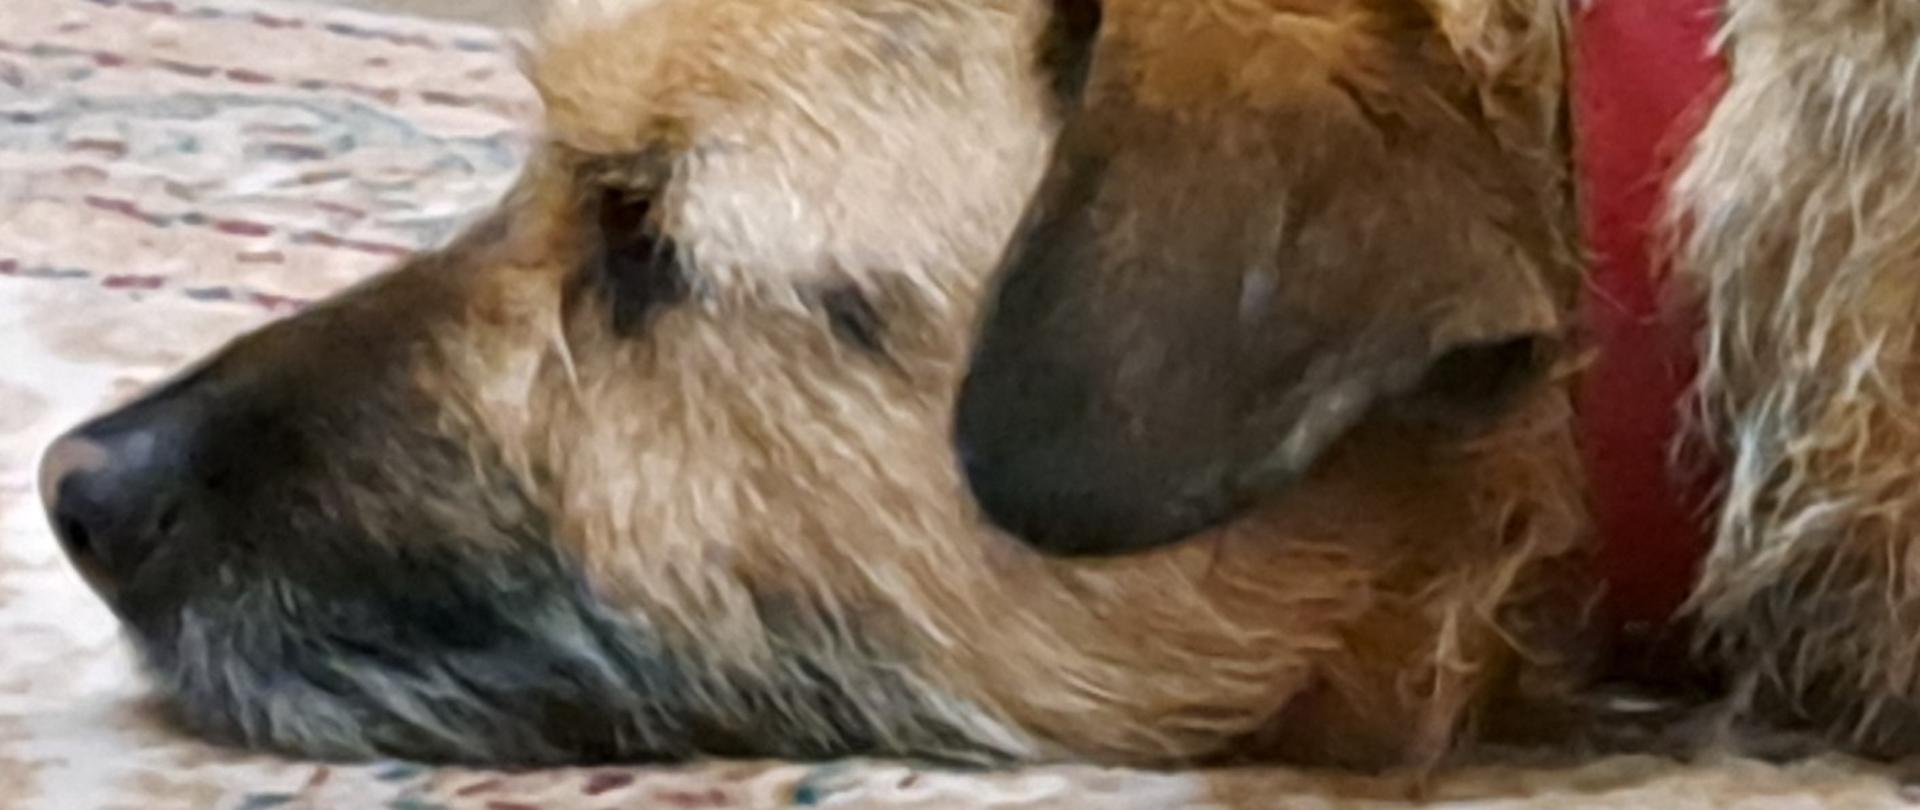 pysk psa w odcieniach brązu z czerwona obrożą. Pies śpi ma oklapnięte ucho.